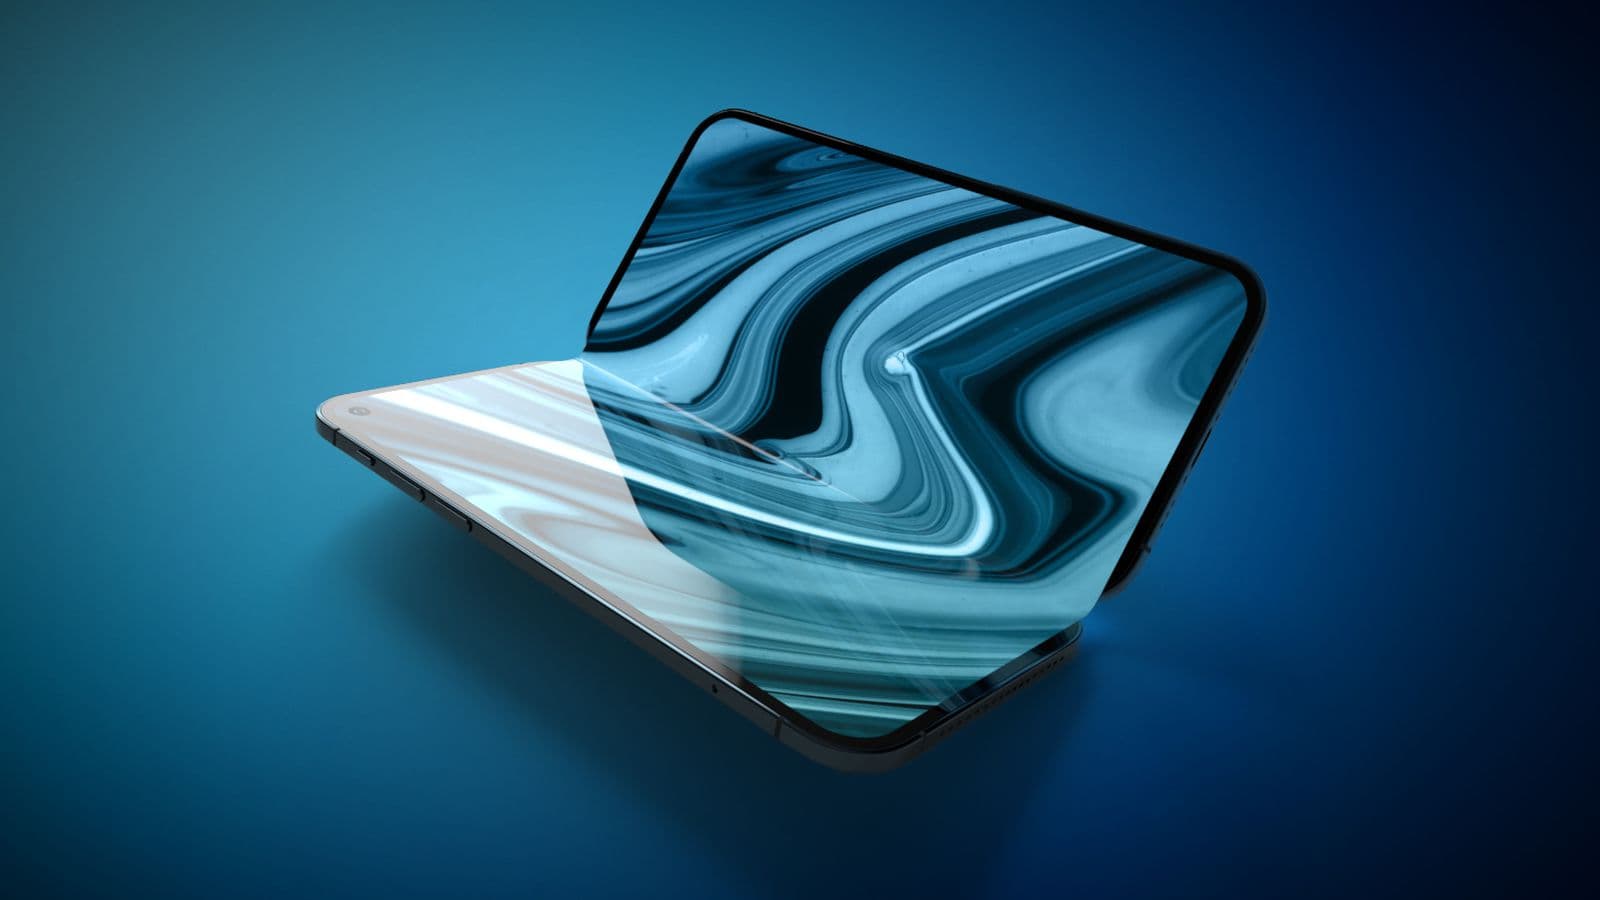 彭博社證實蘋果20吋全螢幕MacBook / iPad折疊式神秘產品